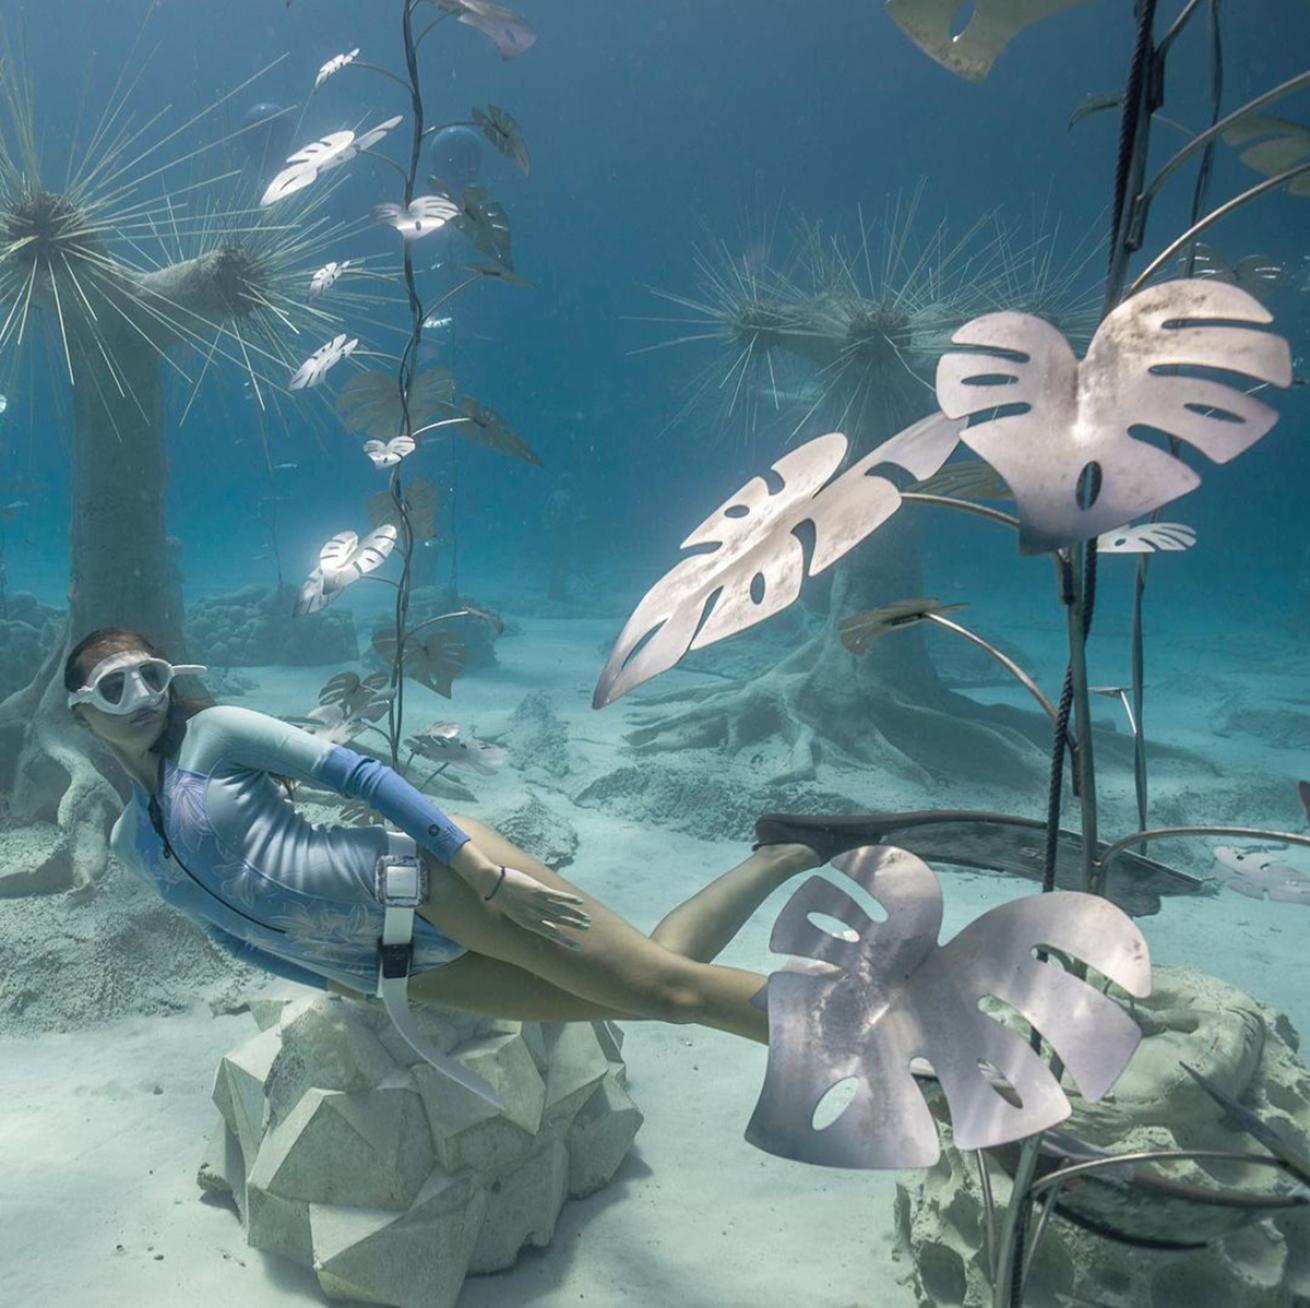 Freediver among underwater sculptures